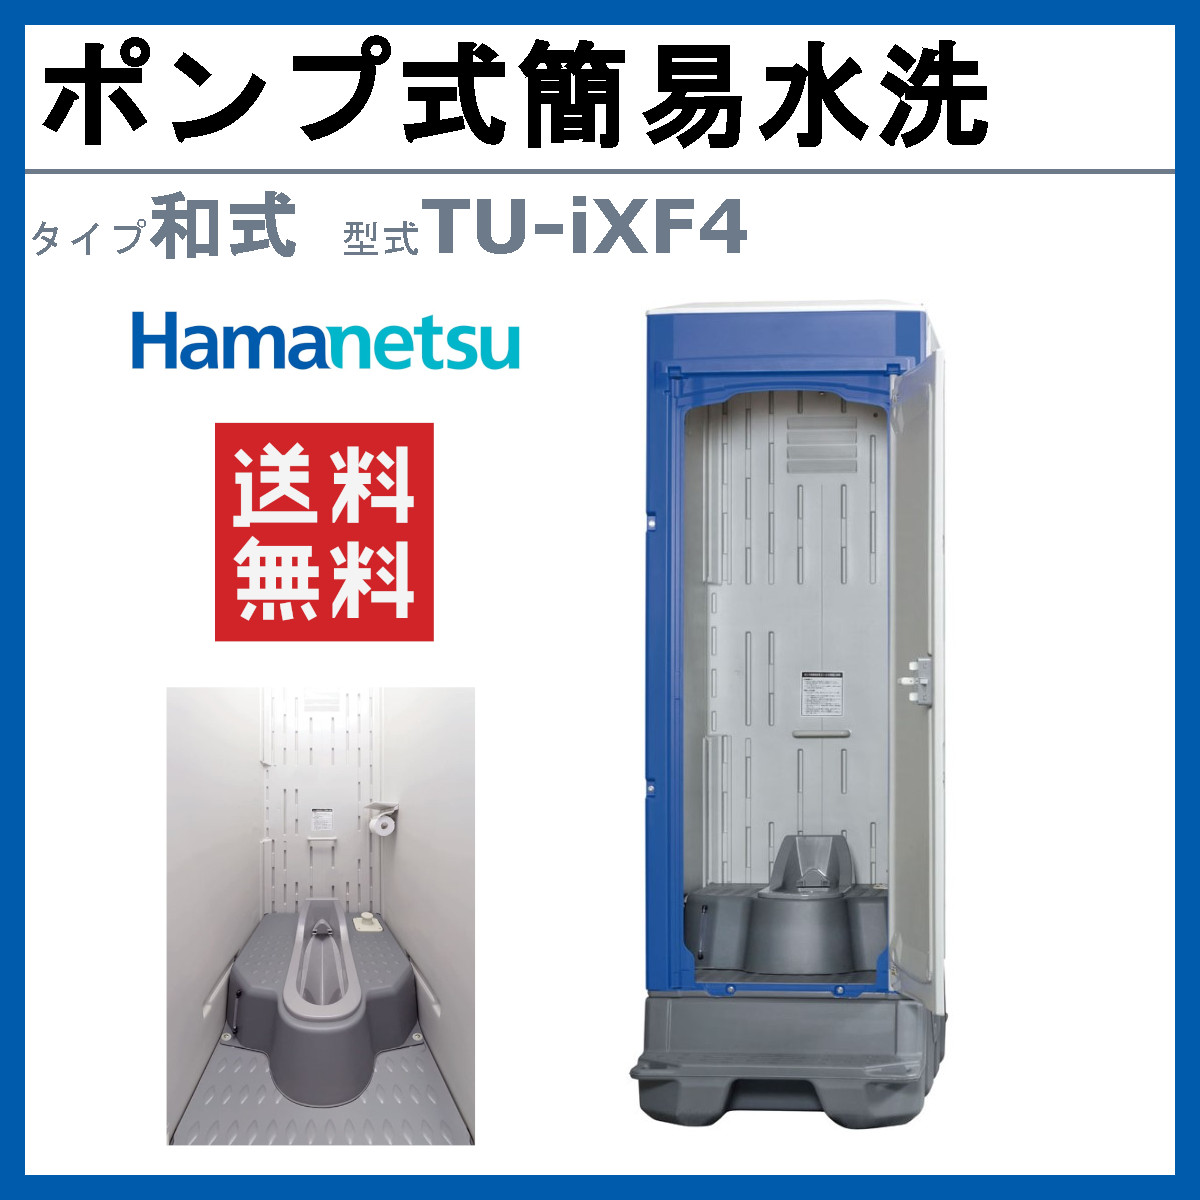 ハマネツ 仮設トイレ ポンプ式簡易水洗 TU-iXF4 イクスシリーズ 和 